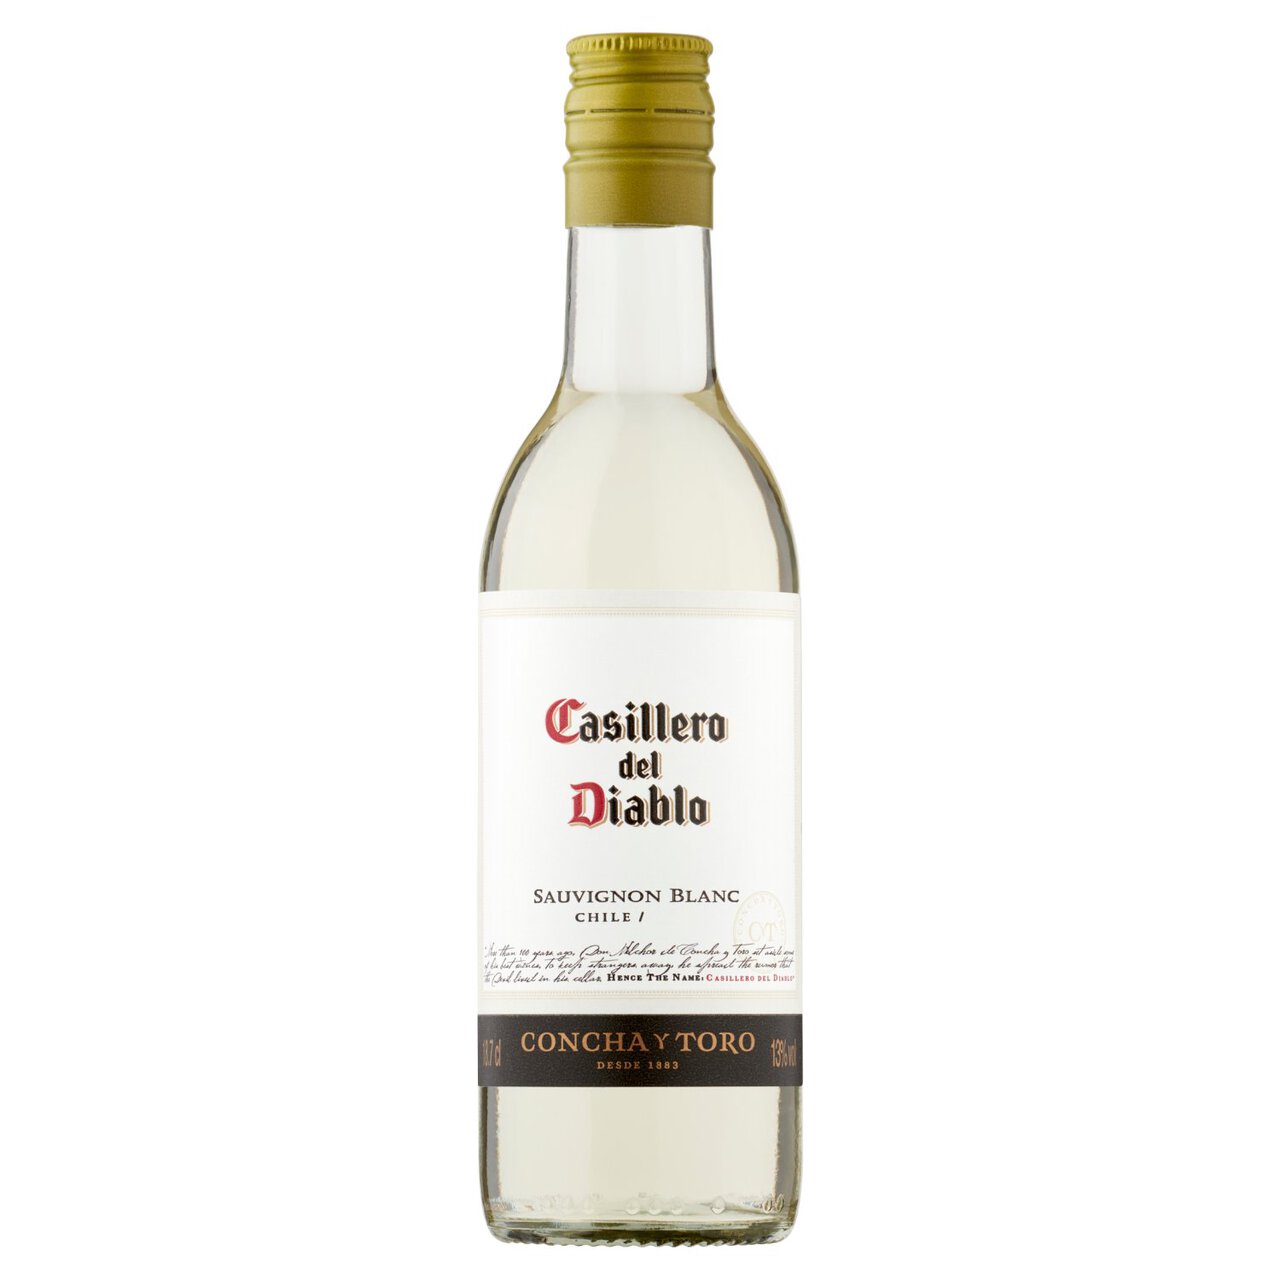 Casillero del Diablo Sauvignon Blanc 18.75cl